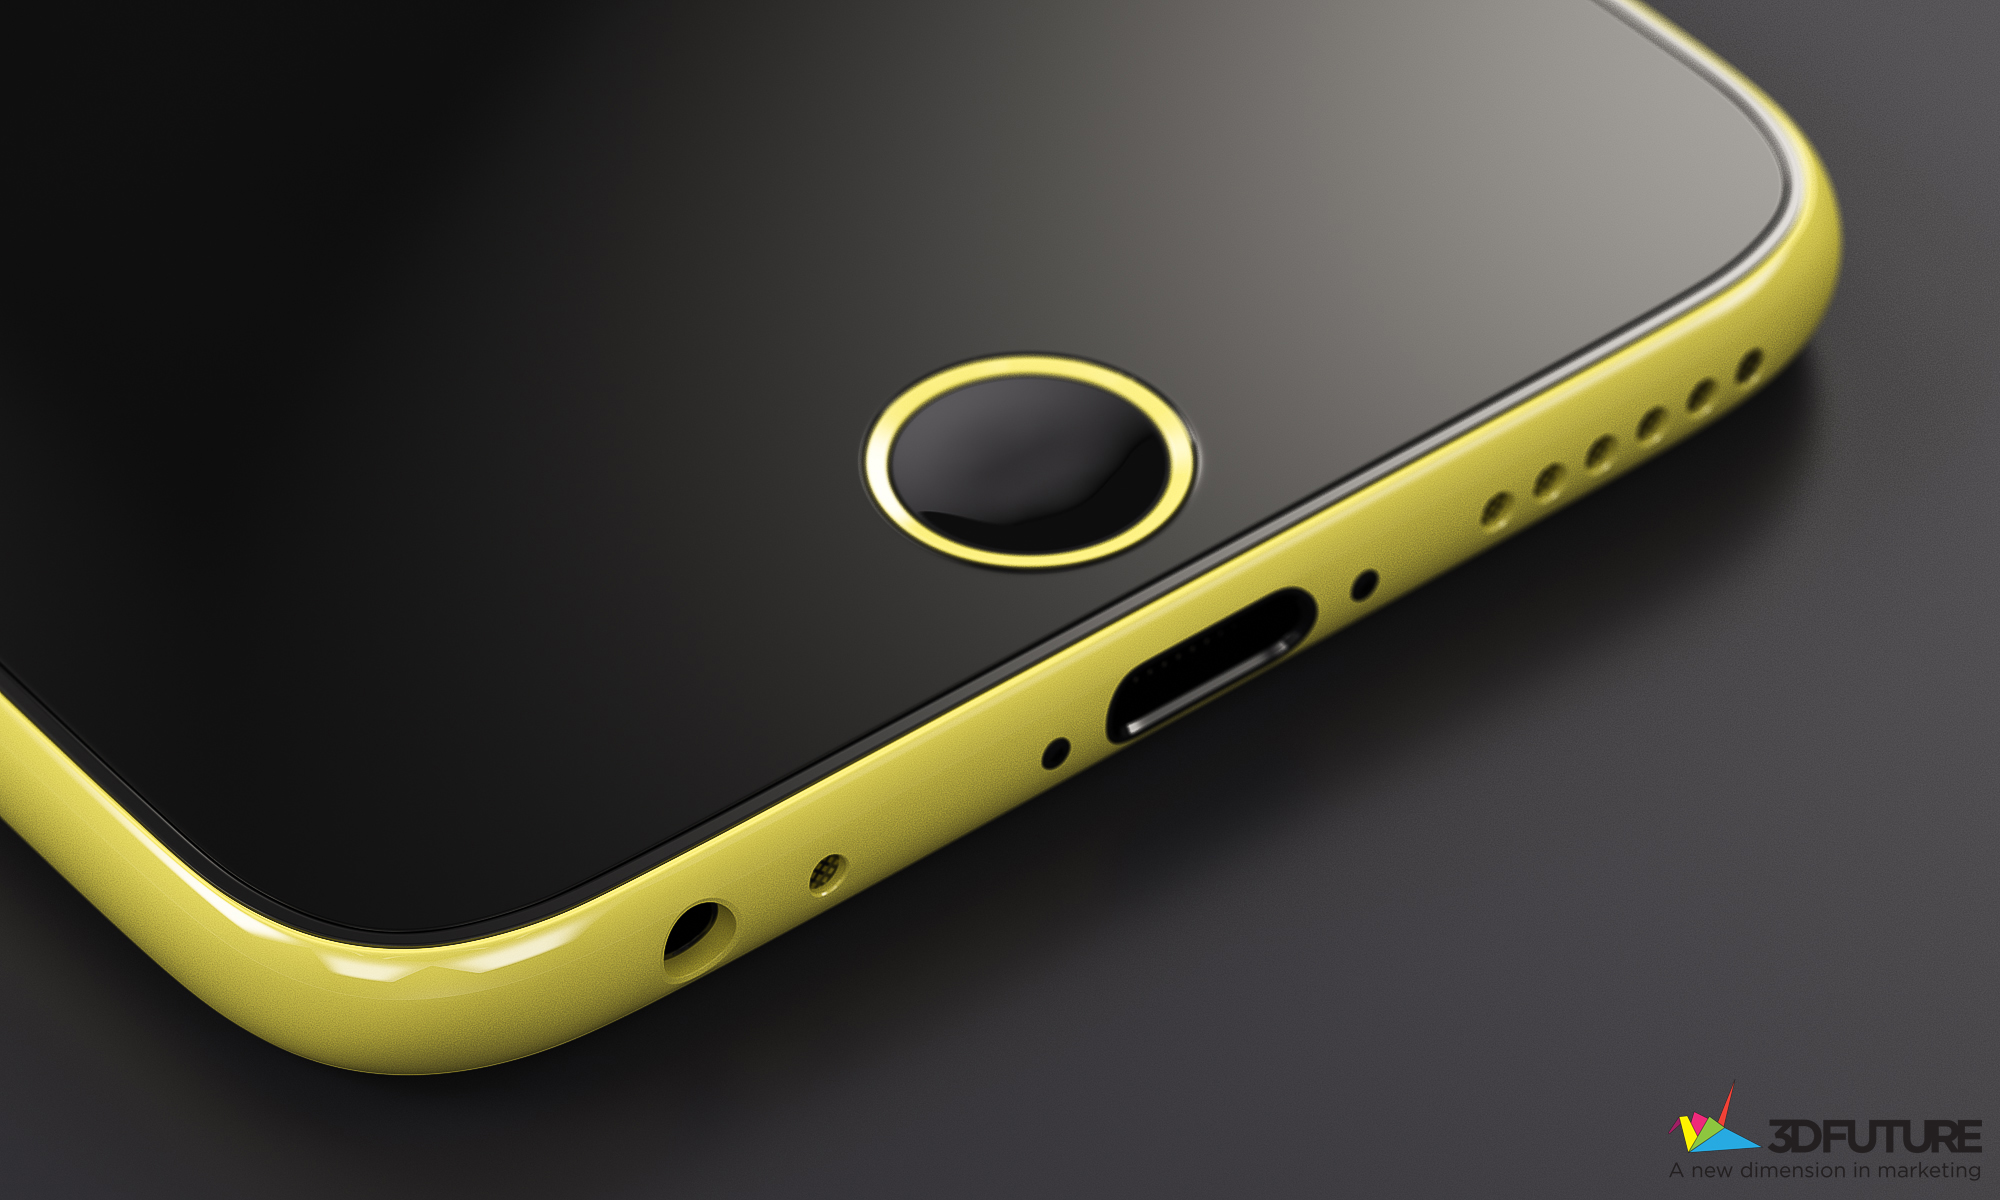 iPhone-6c-concept-renders-4